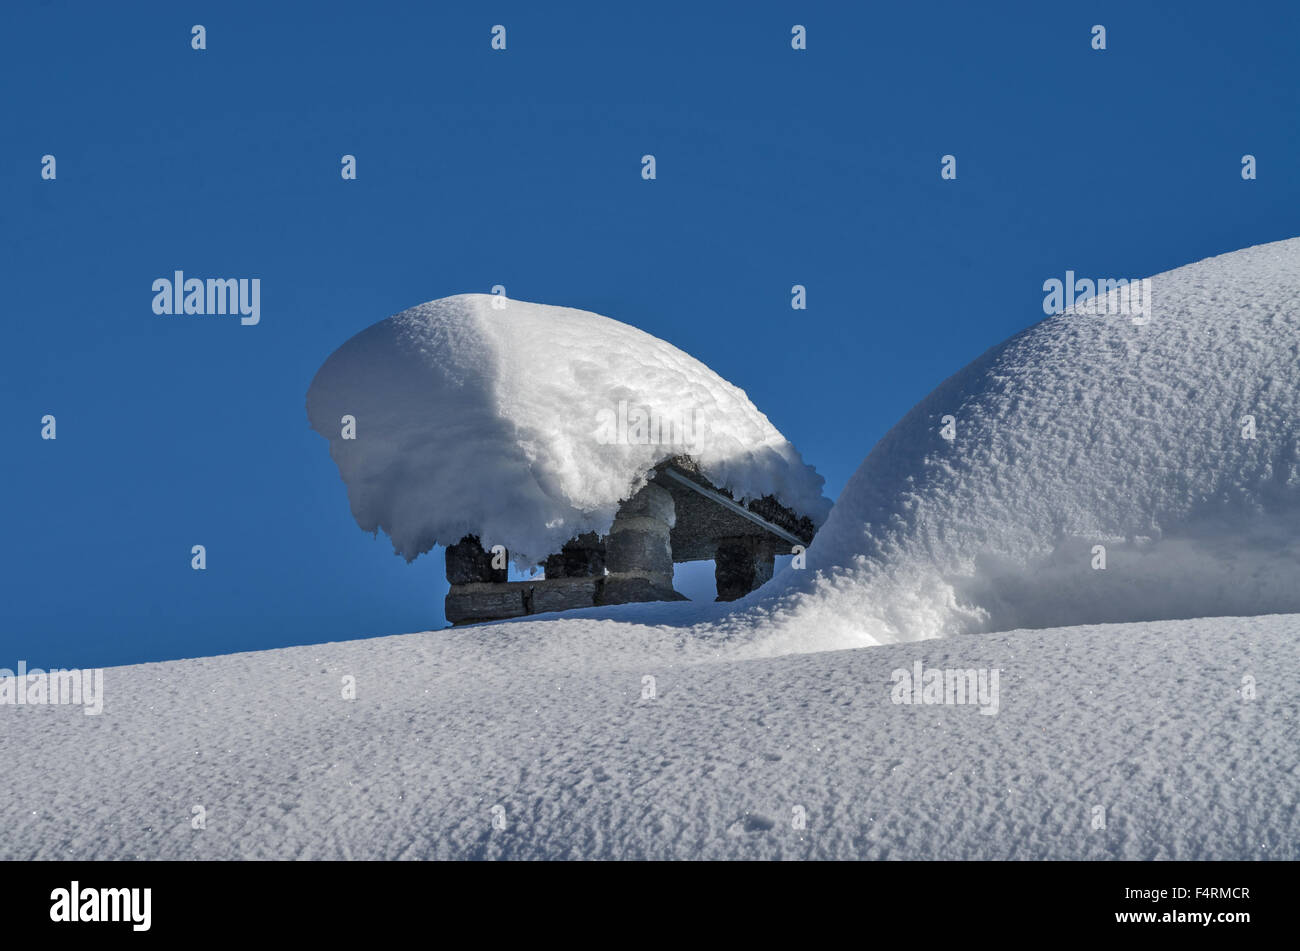 Traditionelle Schornstein ziemlich vollständig vom Schnee bedeckt Stockfoto